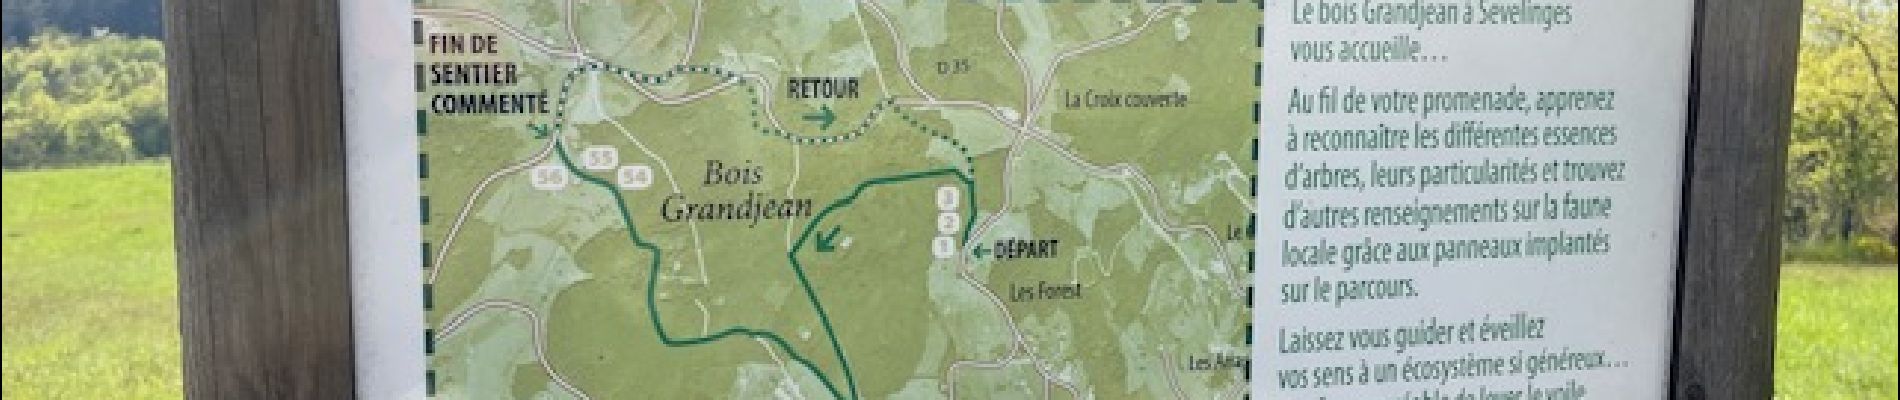 Point of interest Sevelinges - Parcours forestier de découverte - Photo